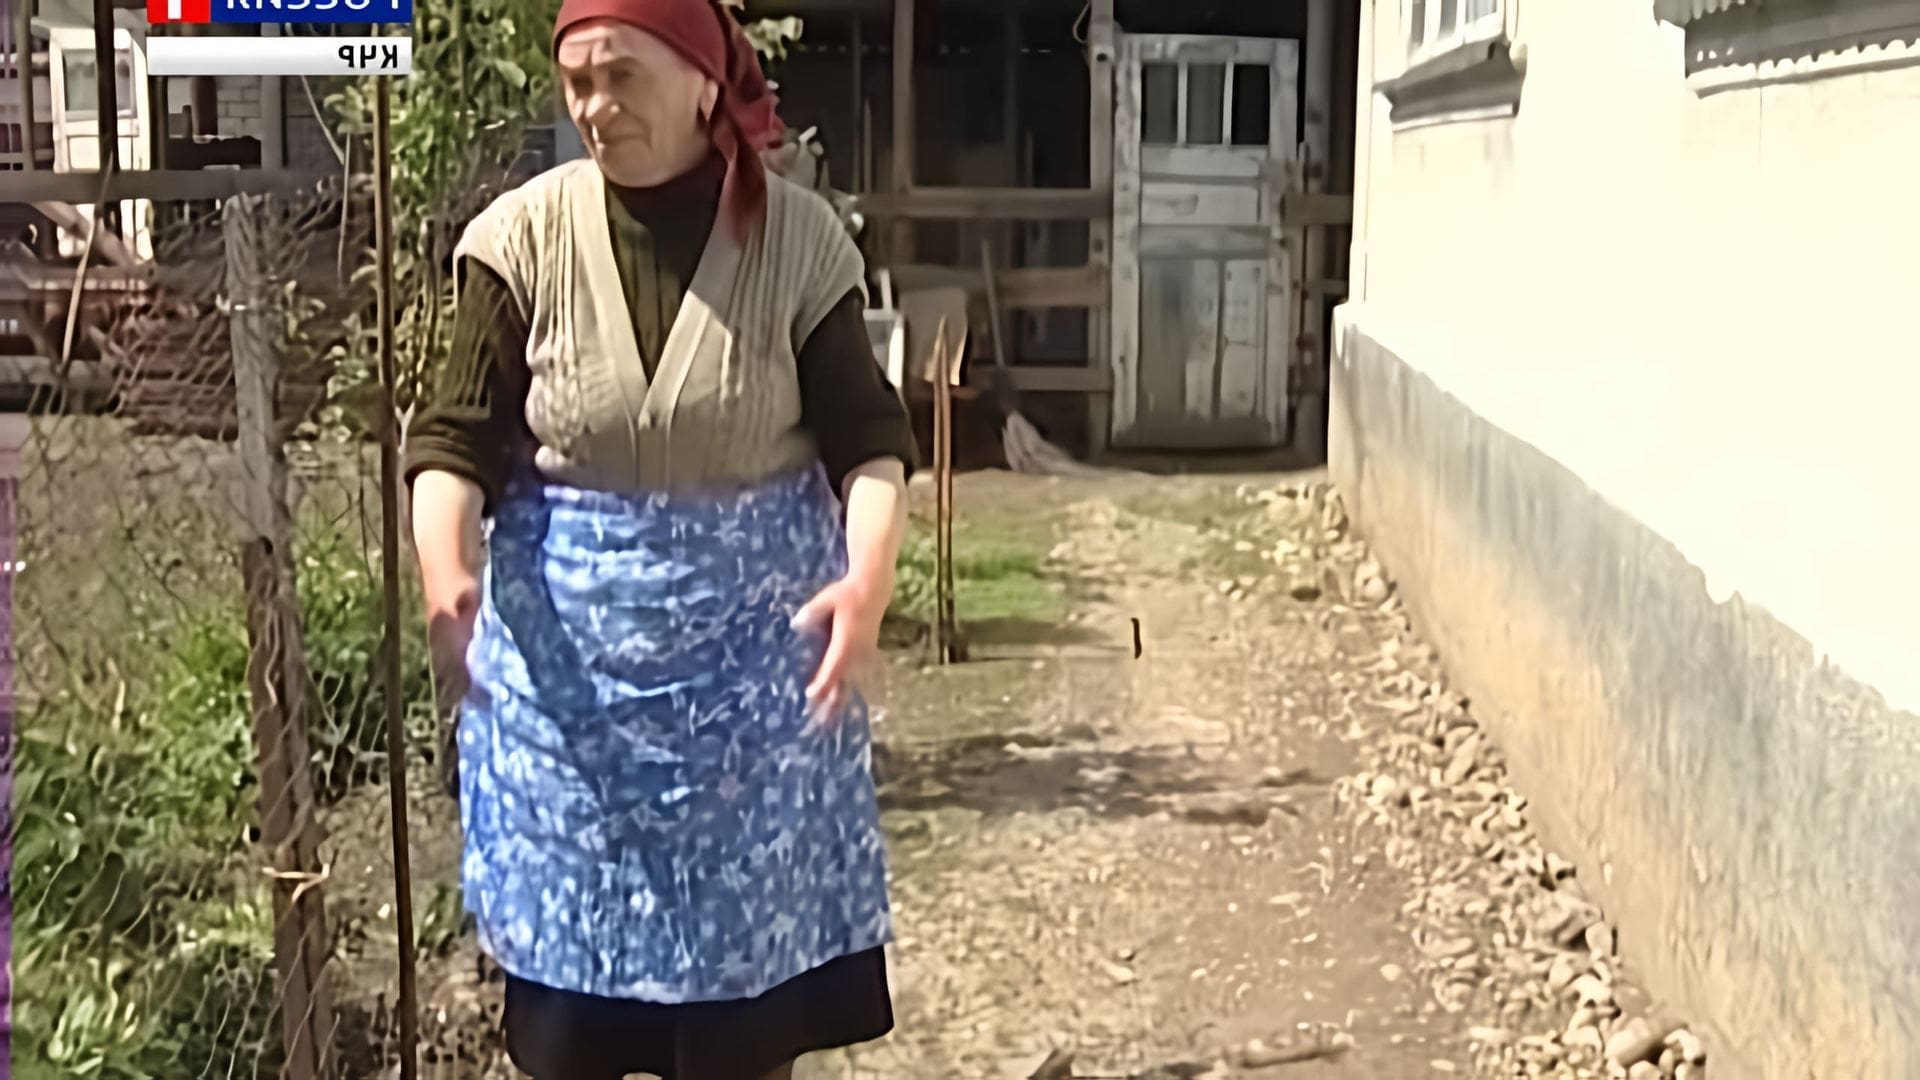 Адыгская кухня - это уникальное наследие черкесского народа, которое отражает его традиции, культуру и историю